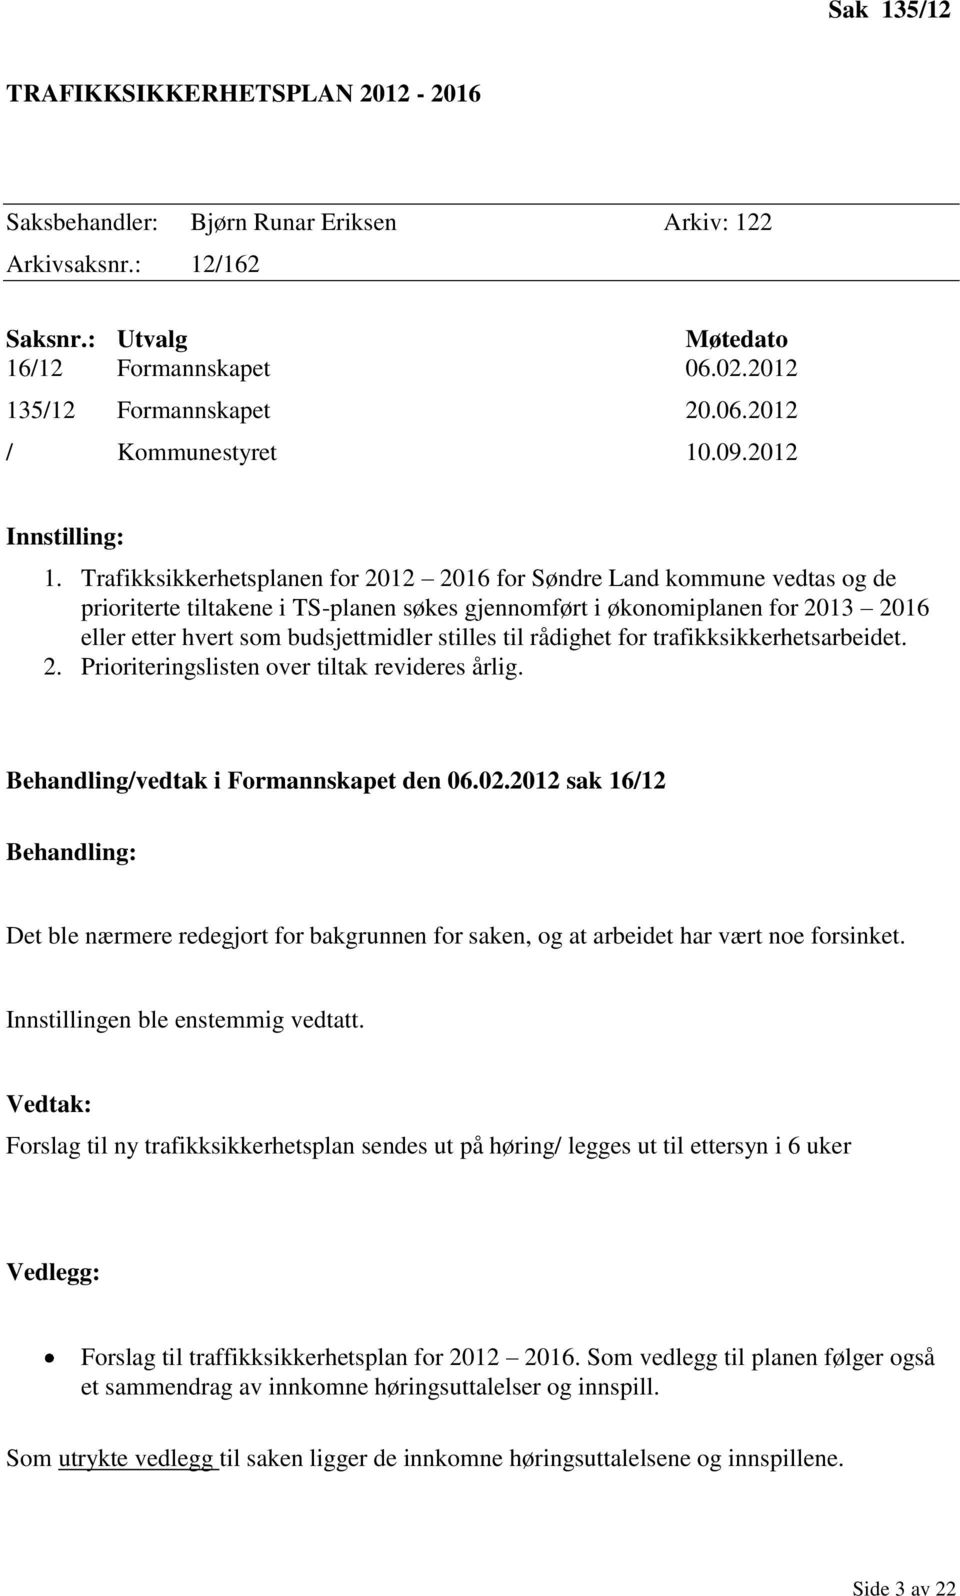 Trafikksikkerhetsplanen for 2012 2016 for Søndre Land kommune vedtas og de prioriterte tiltakene i TS-planen søkes gjennomført i økonomiplanen for 2013 2016 eller etter hvert som budsjettmidler